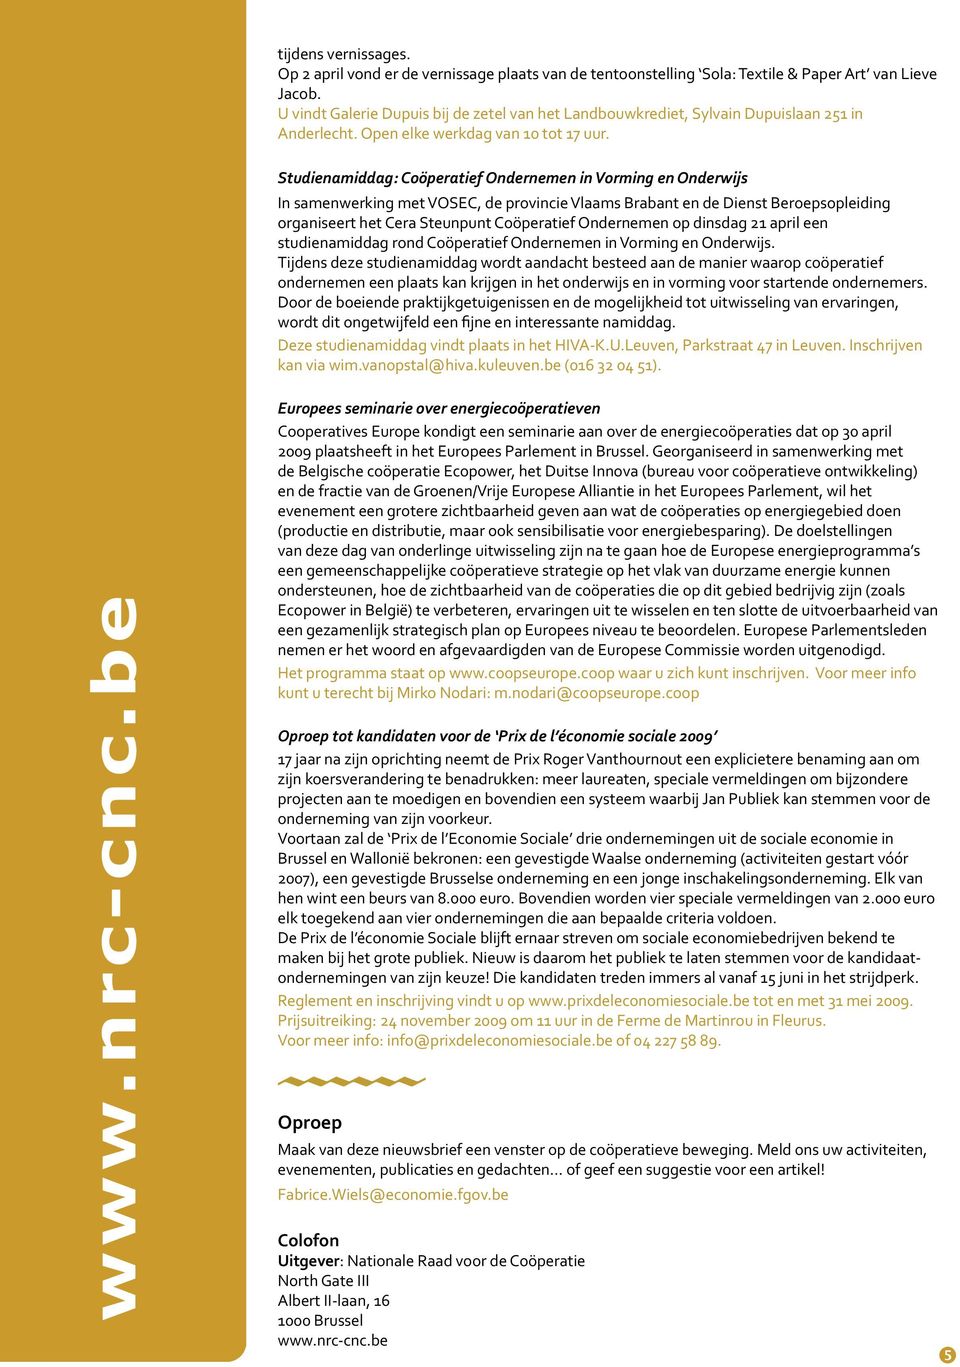 Studienamiddag: Coöperatief Ondernemen in Vorming en Onderwijs In samenwerking met VOSEC, de provincie Vlaams Brabant en de Dienst Beroepsopleiding organiseert het Cera Steunpunt Coöperatief